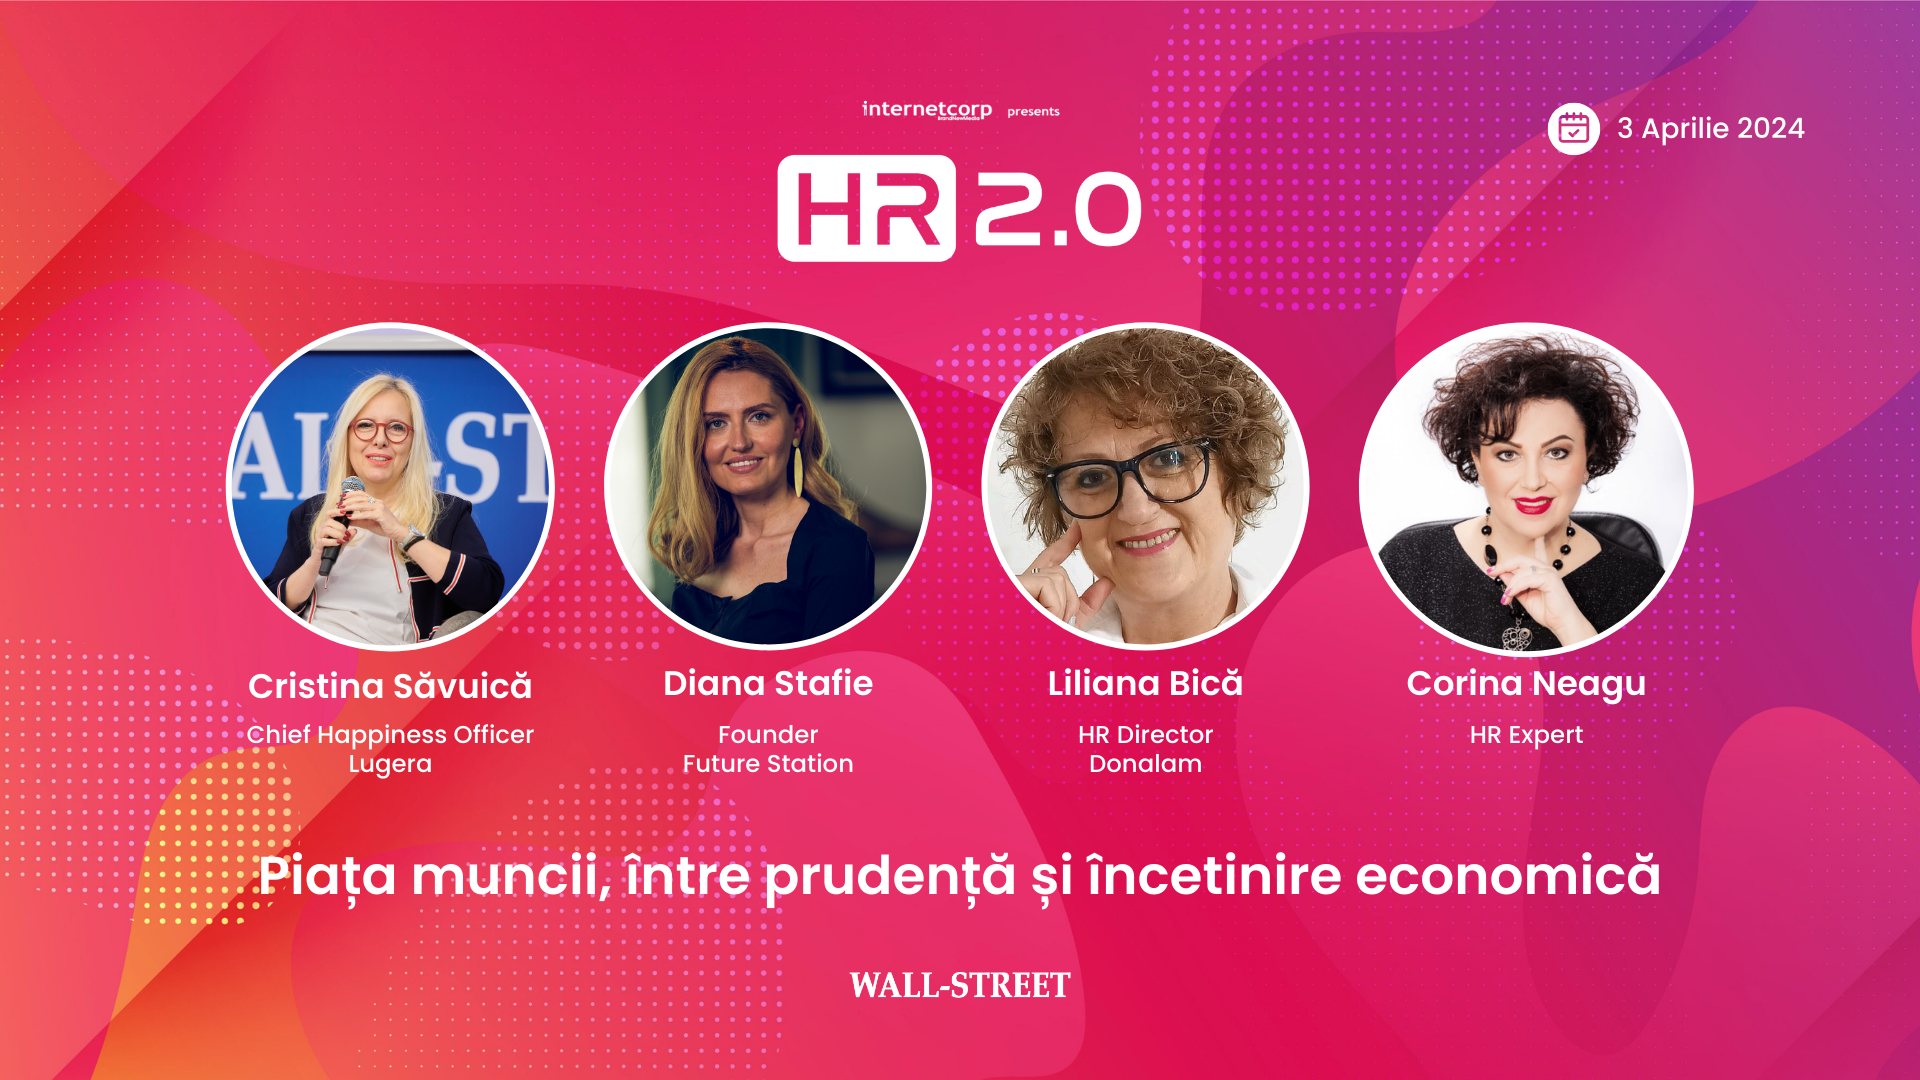 Wall-Street.ro te invită la cel mai așteptat eveniment din industria de resurse umane: HR 2.0 - Piața muncii, între prudență și încetinire economică, organizat pe 3 aprilie